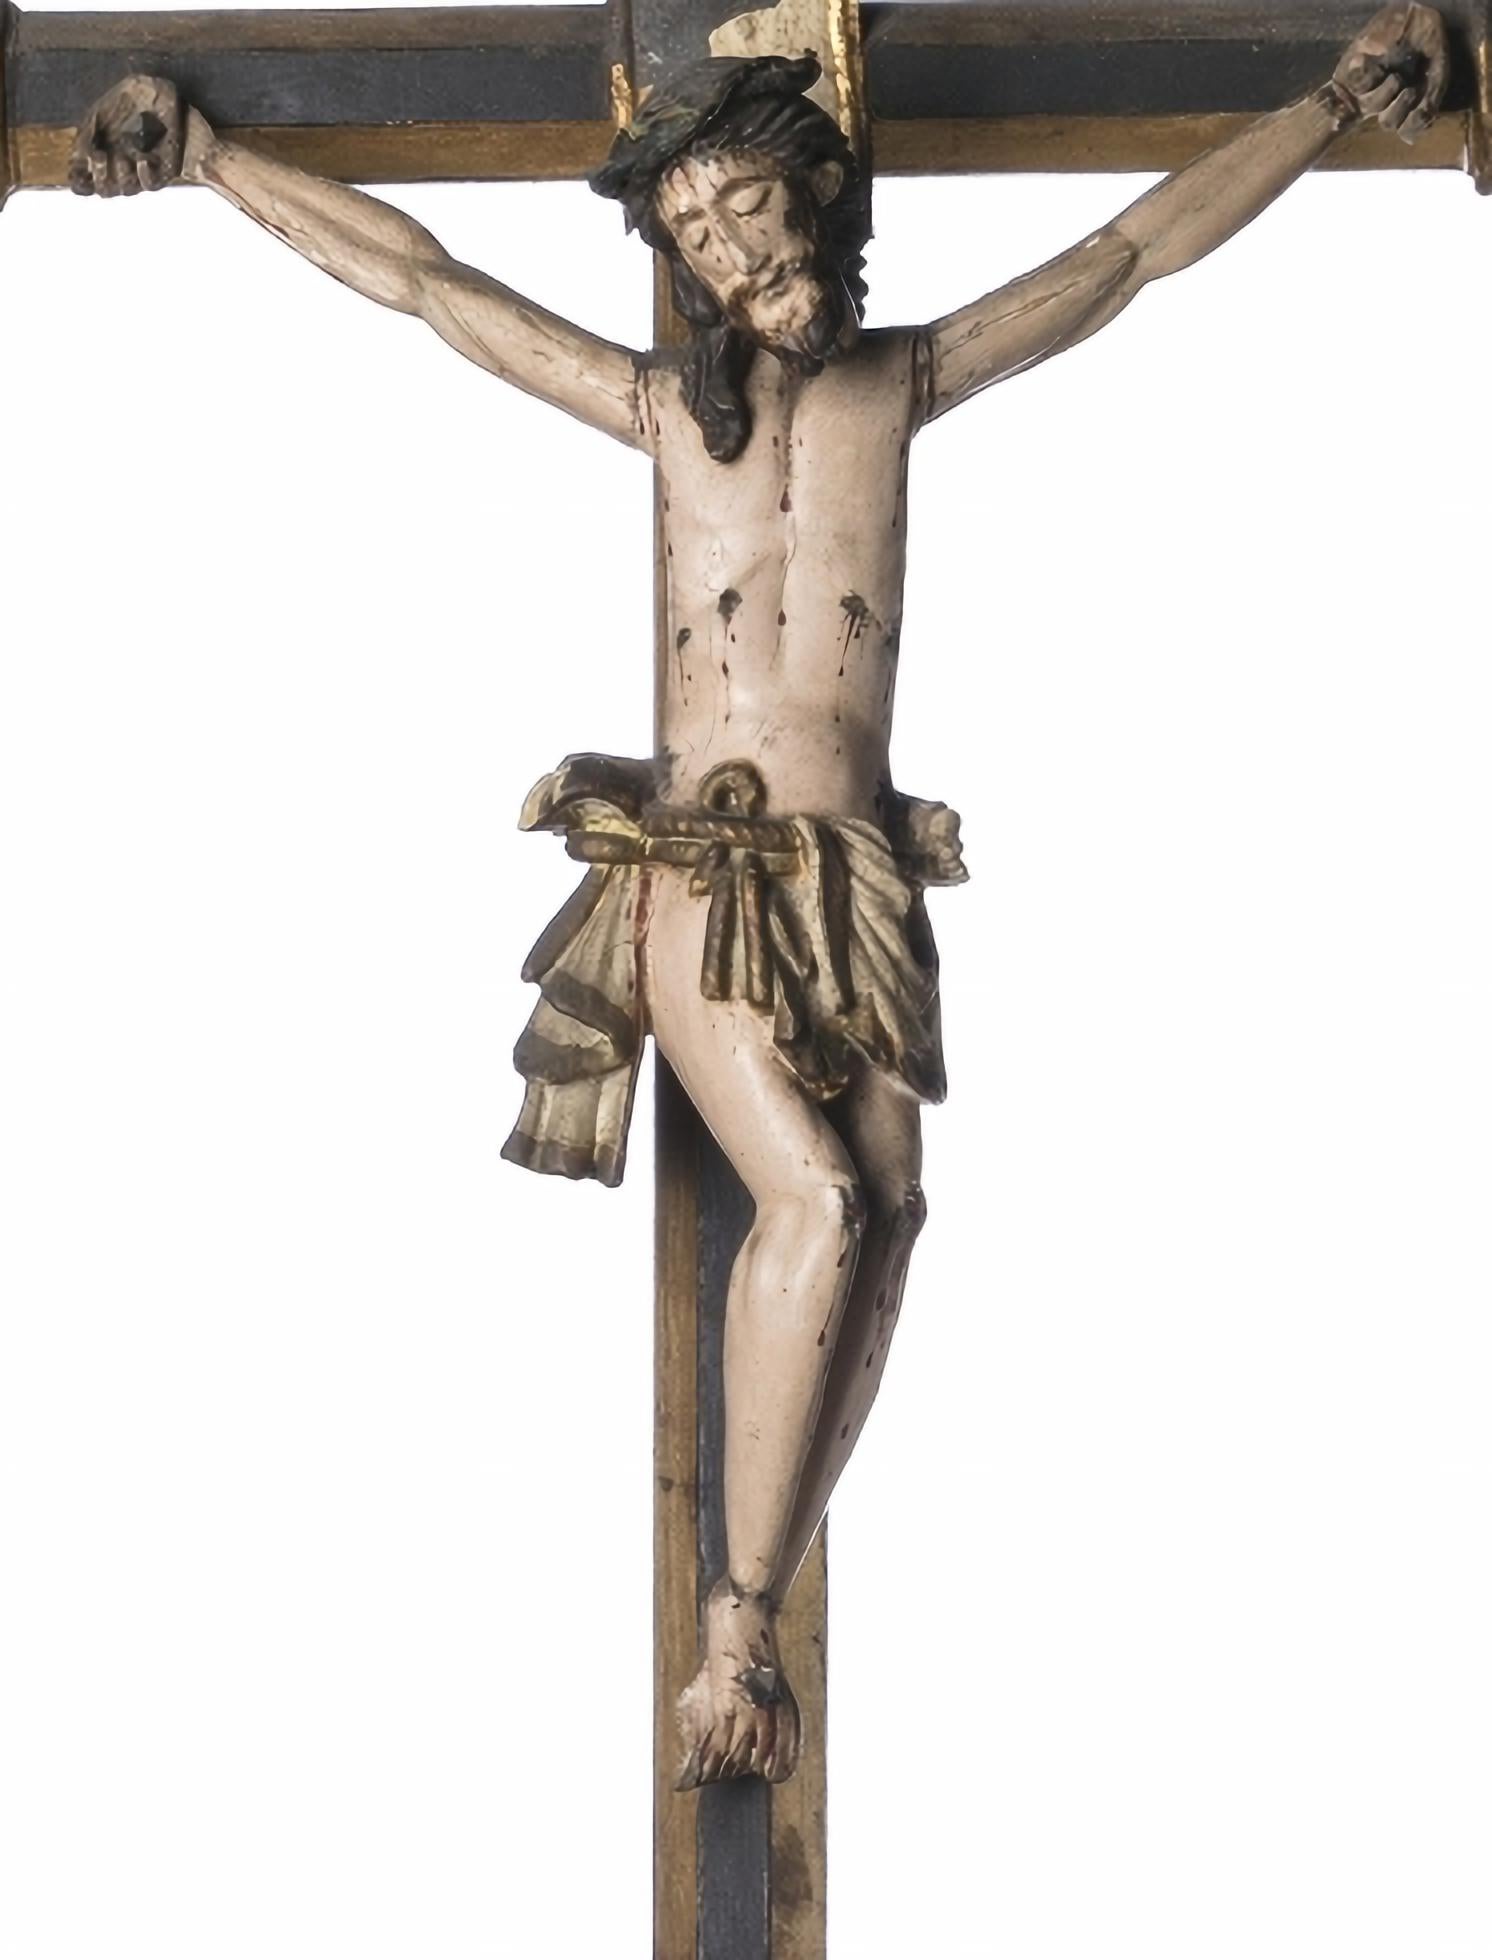 JÉSUS CHRIST CRUCIFIÉ

Sculpture portugaise du 17e siècle
en bois sculpté, polychrome et doré.
Petits défauts dans la polychromie.
Hauteur : (Christ) 32 cm. Hauteur : (totale) 86 cm.
bonnes conditions
